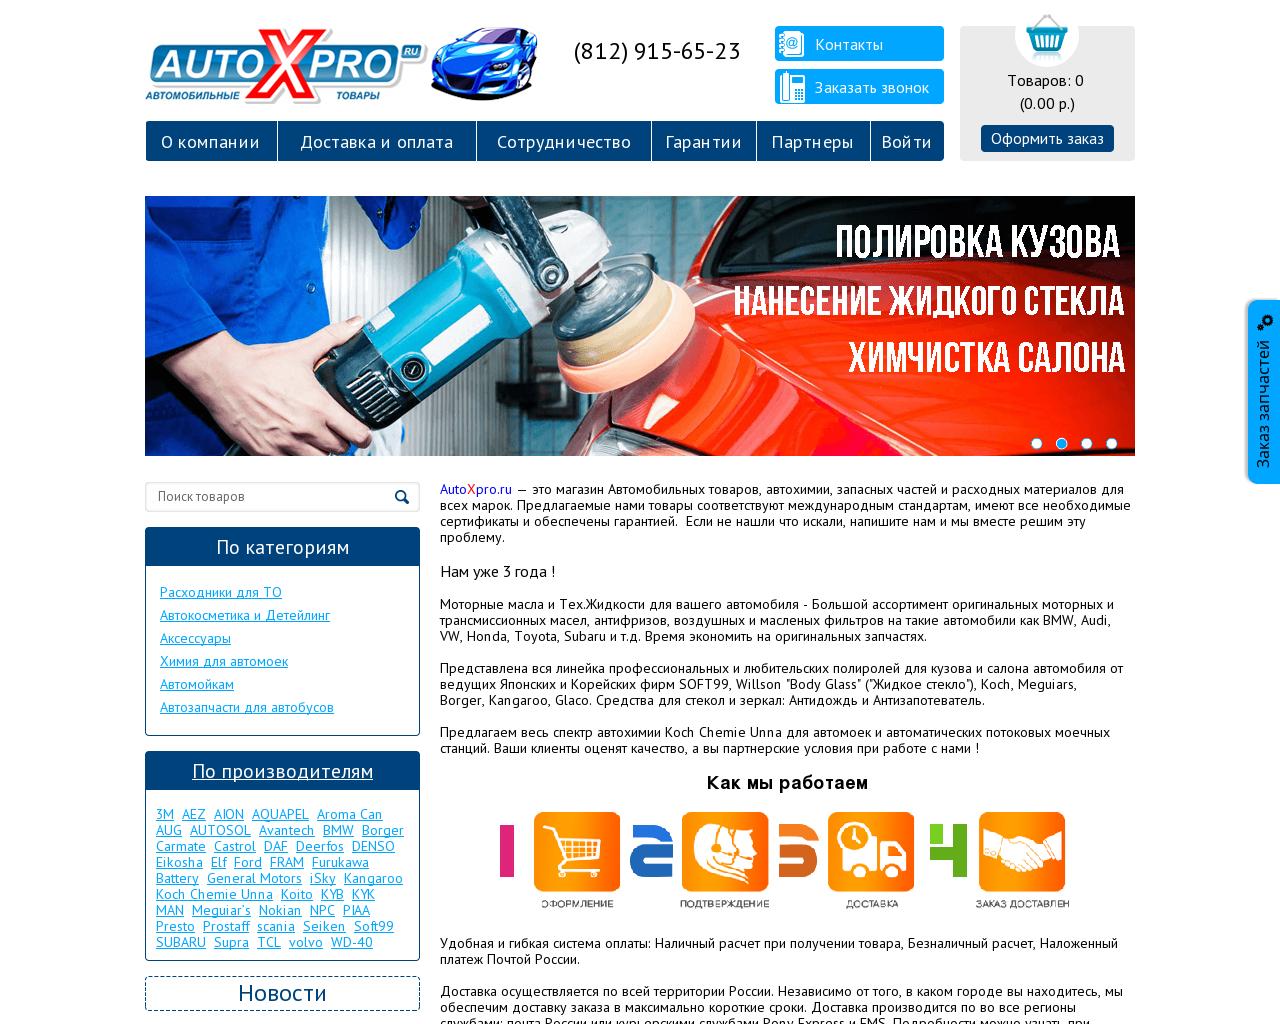 Изображение сайта autoxpro.ru в разрешении 1280x1024